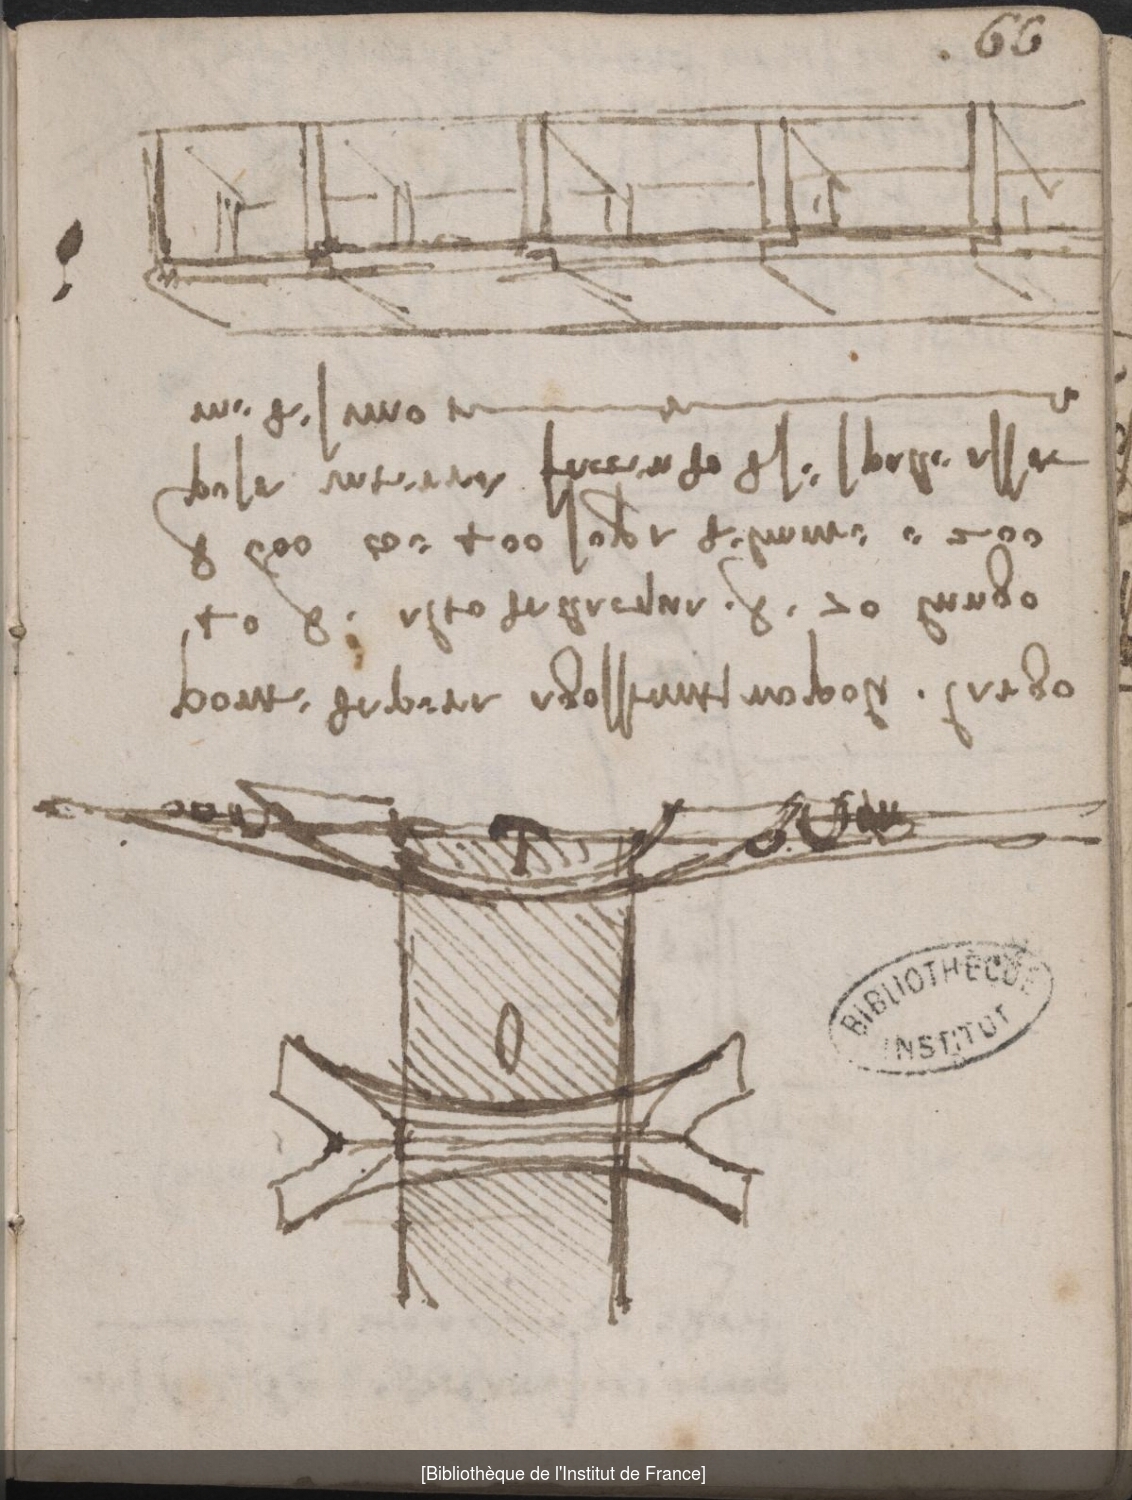 Ms 2182 (manuscrit L), , f. 66. Projet de pont. Léonard avait conçu l’idée d’un pont sur la Corne d’Or pour réunir Pera à Constantinople.